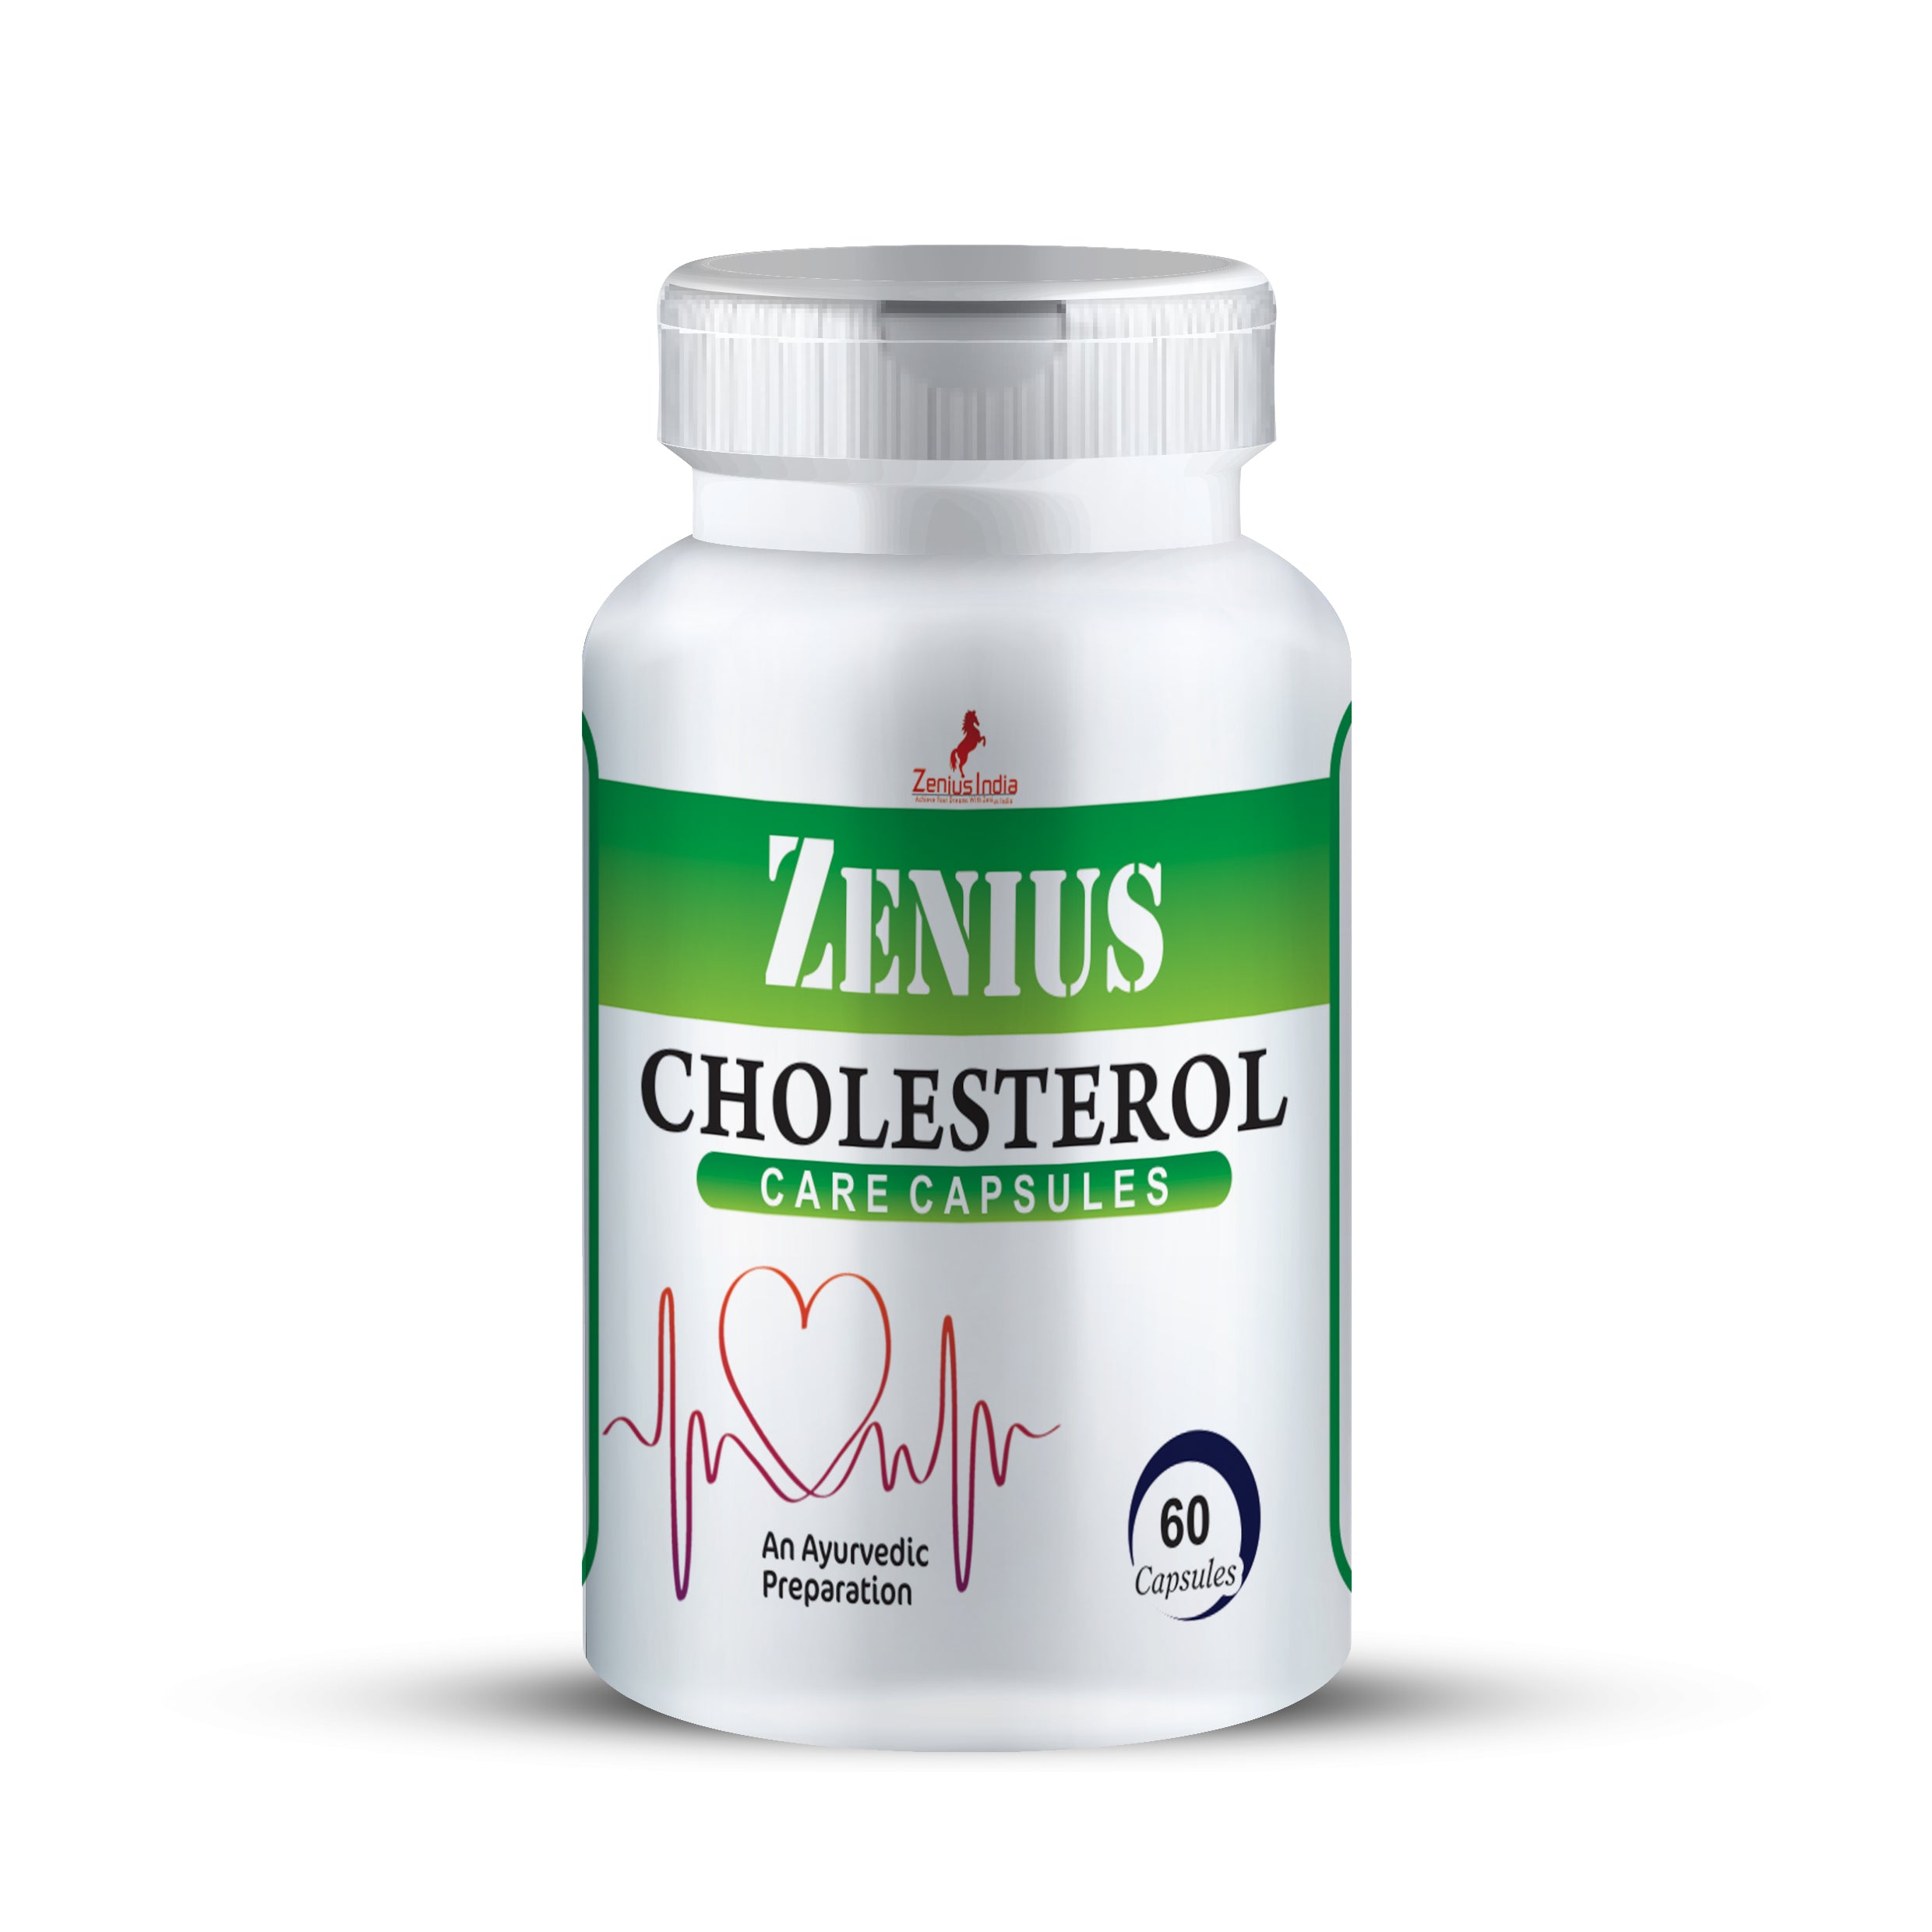 Zenius Cholesterol Care Capsule - 60 Capsules